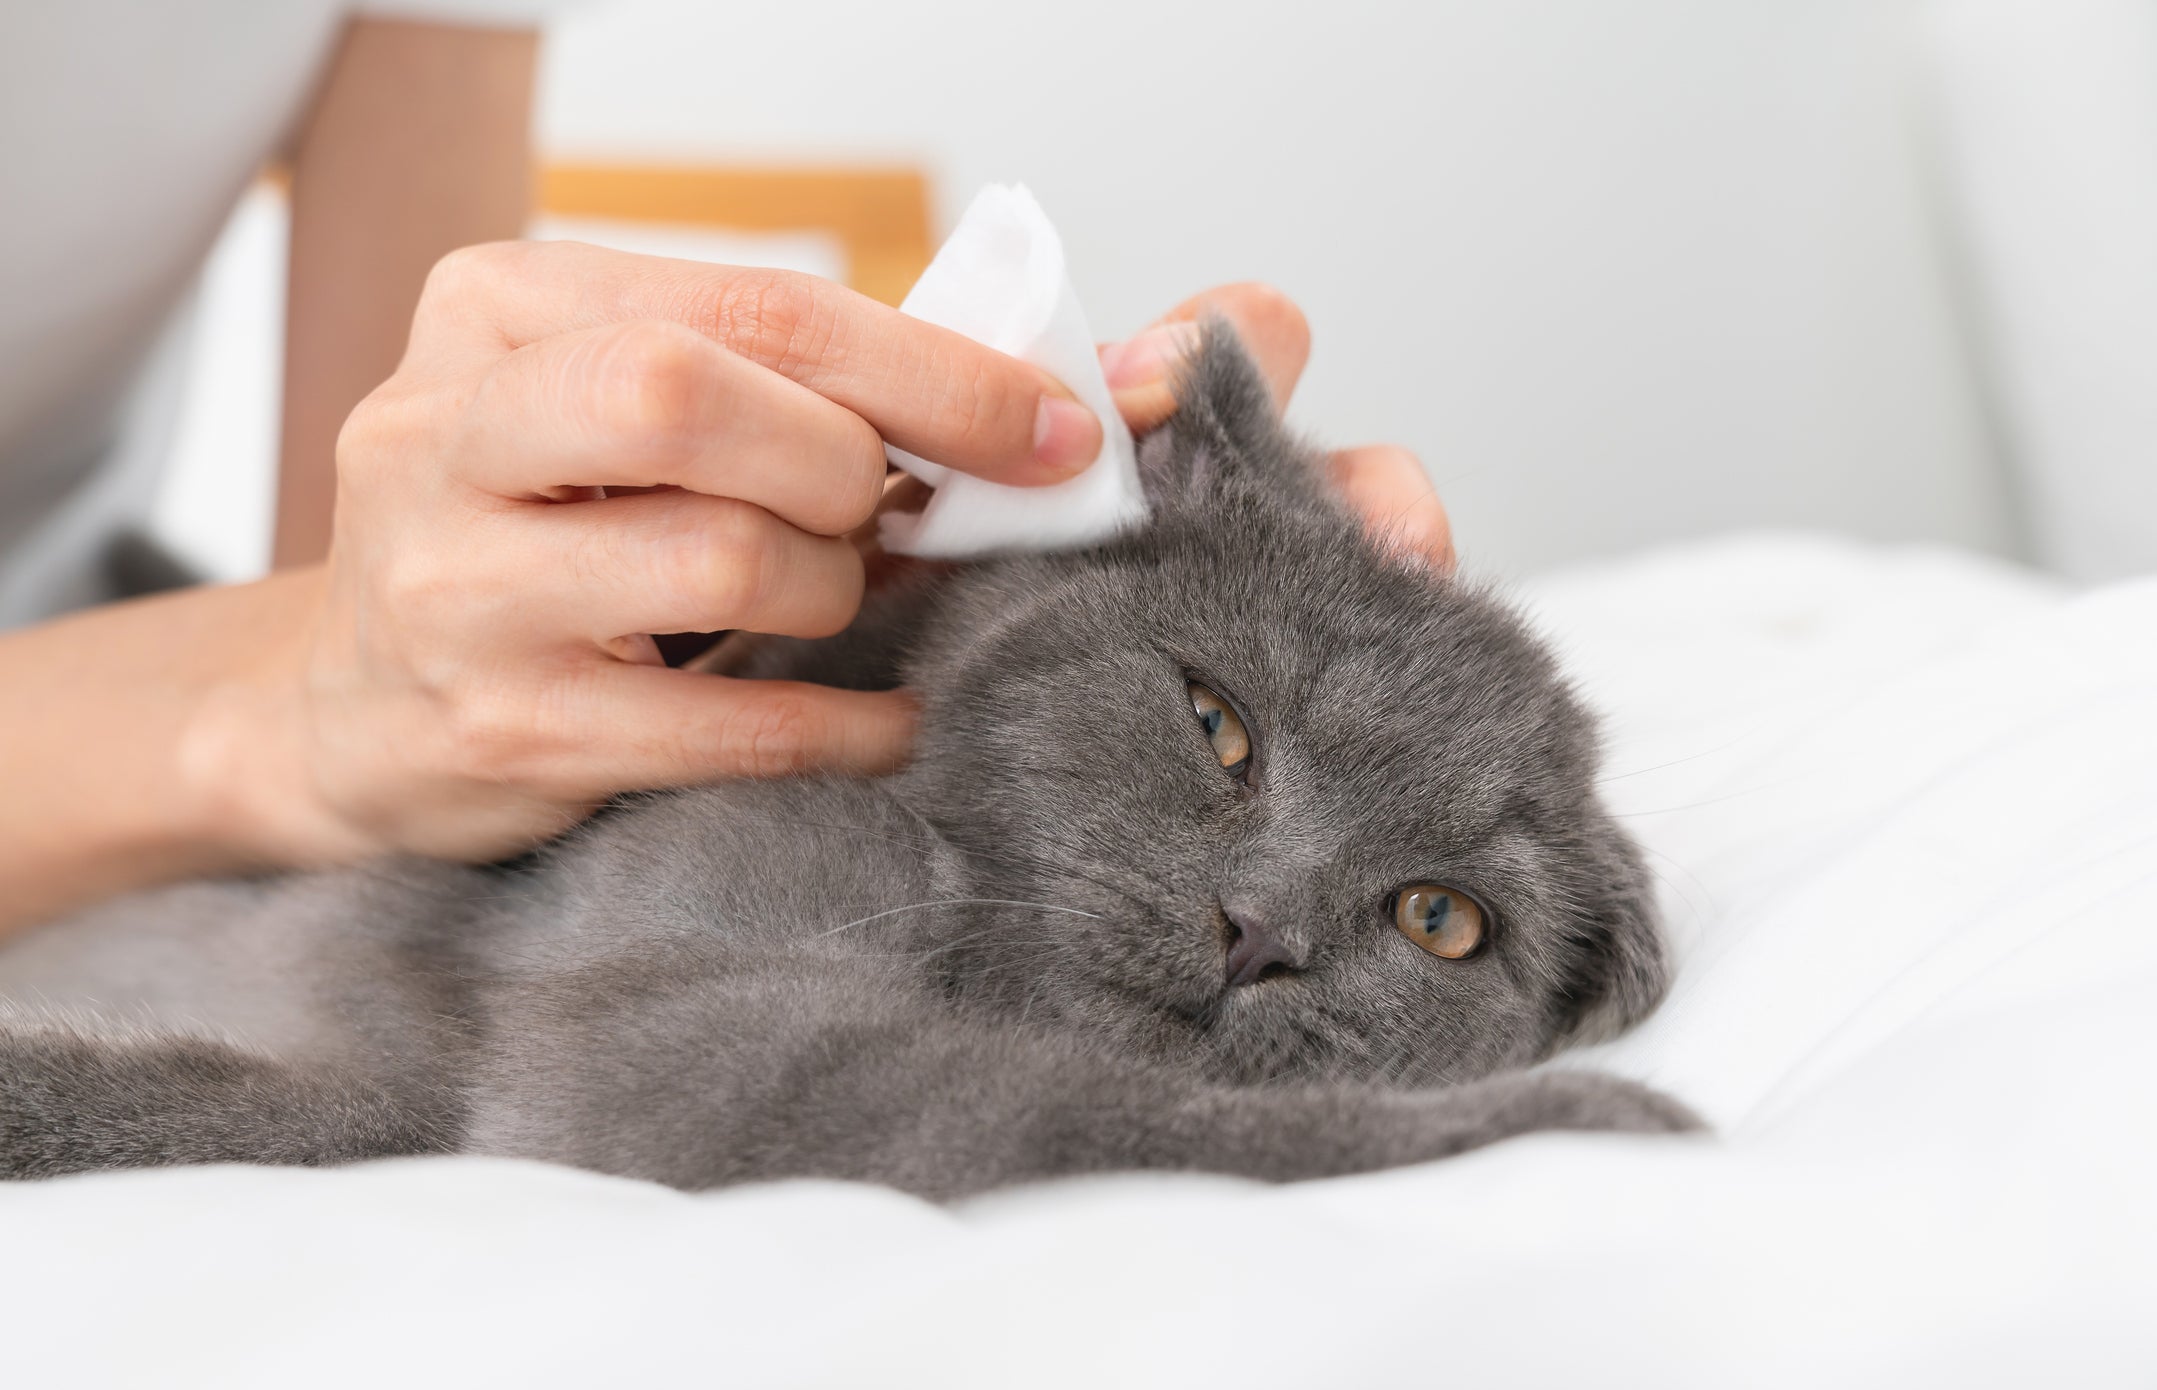 Tutora limpando orelha de gato cinza com lenço